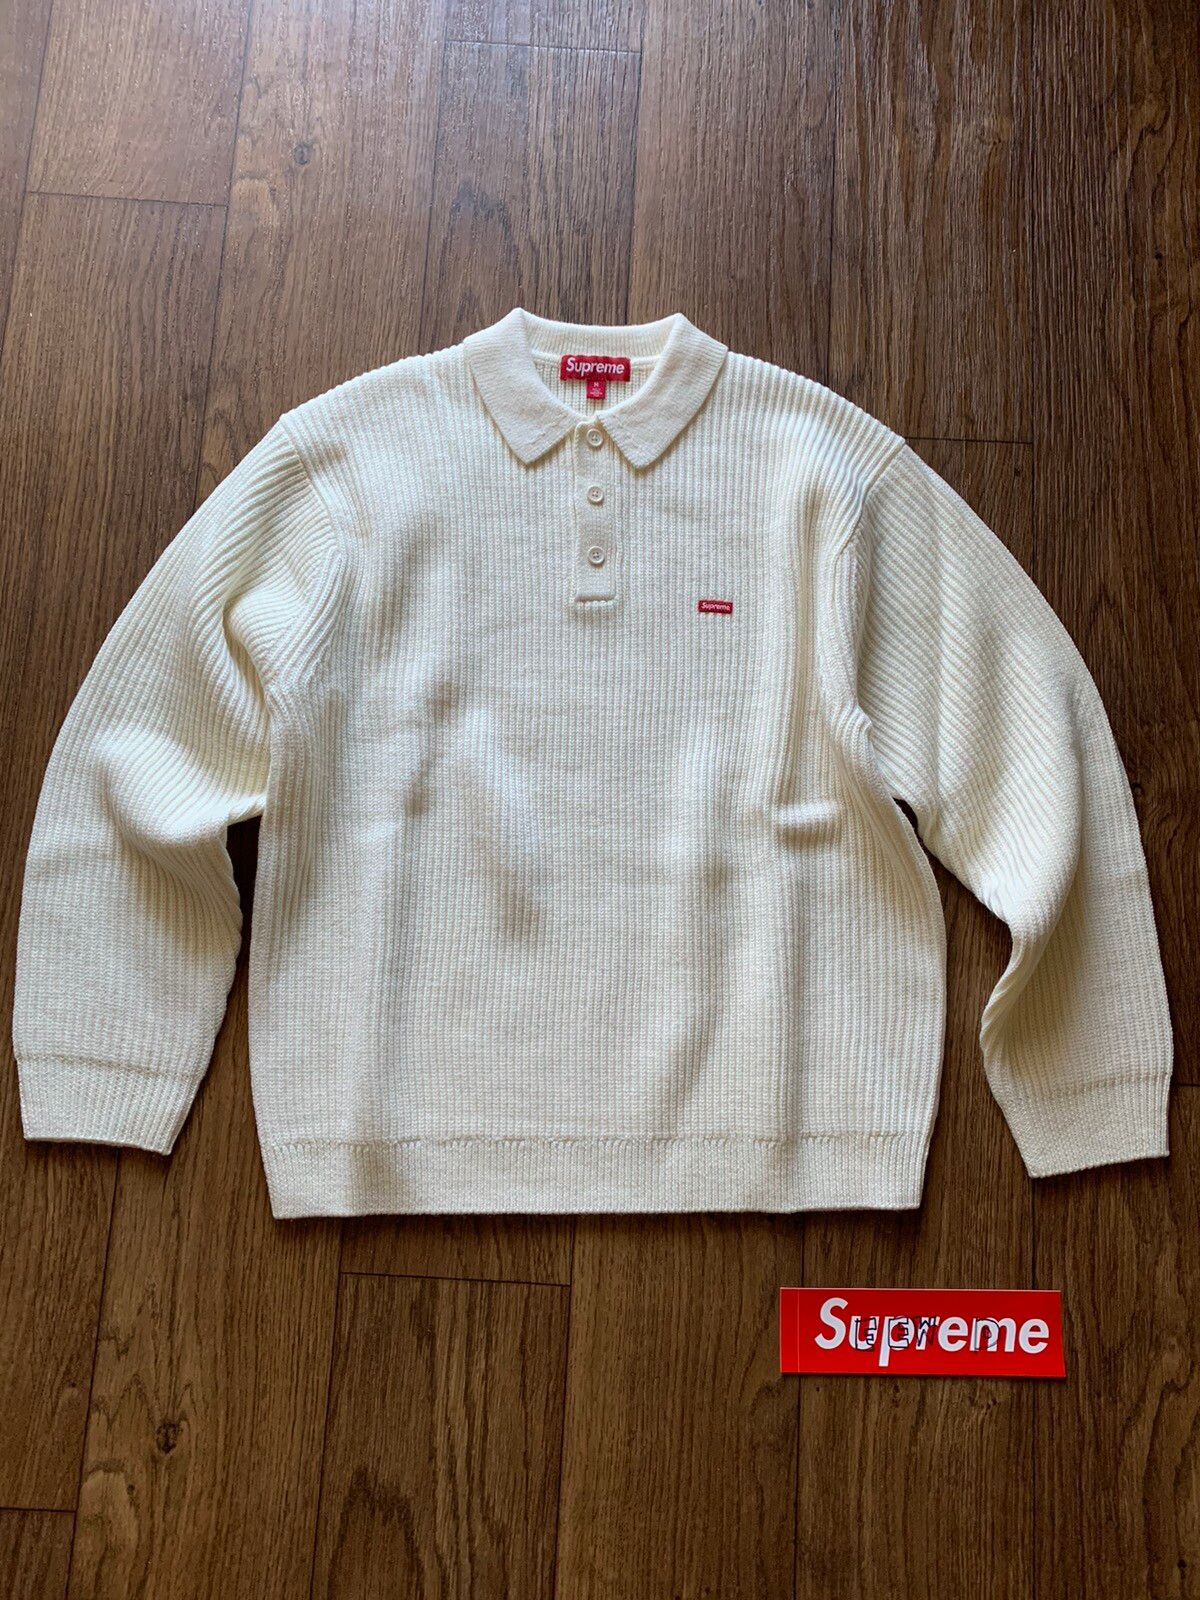 supreme smallboxpoloSweater